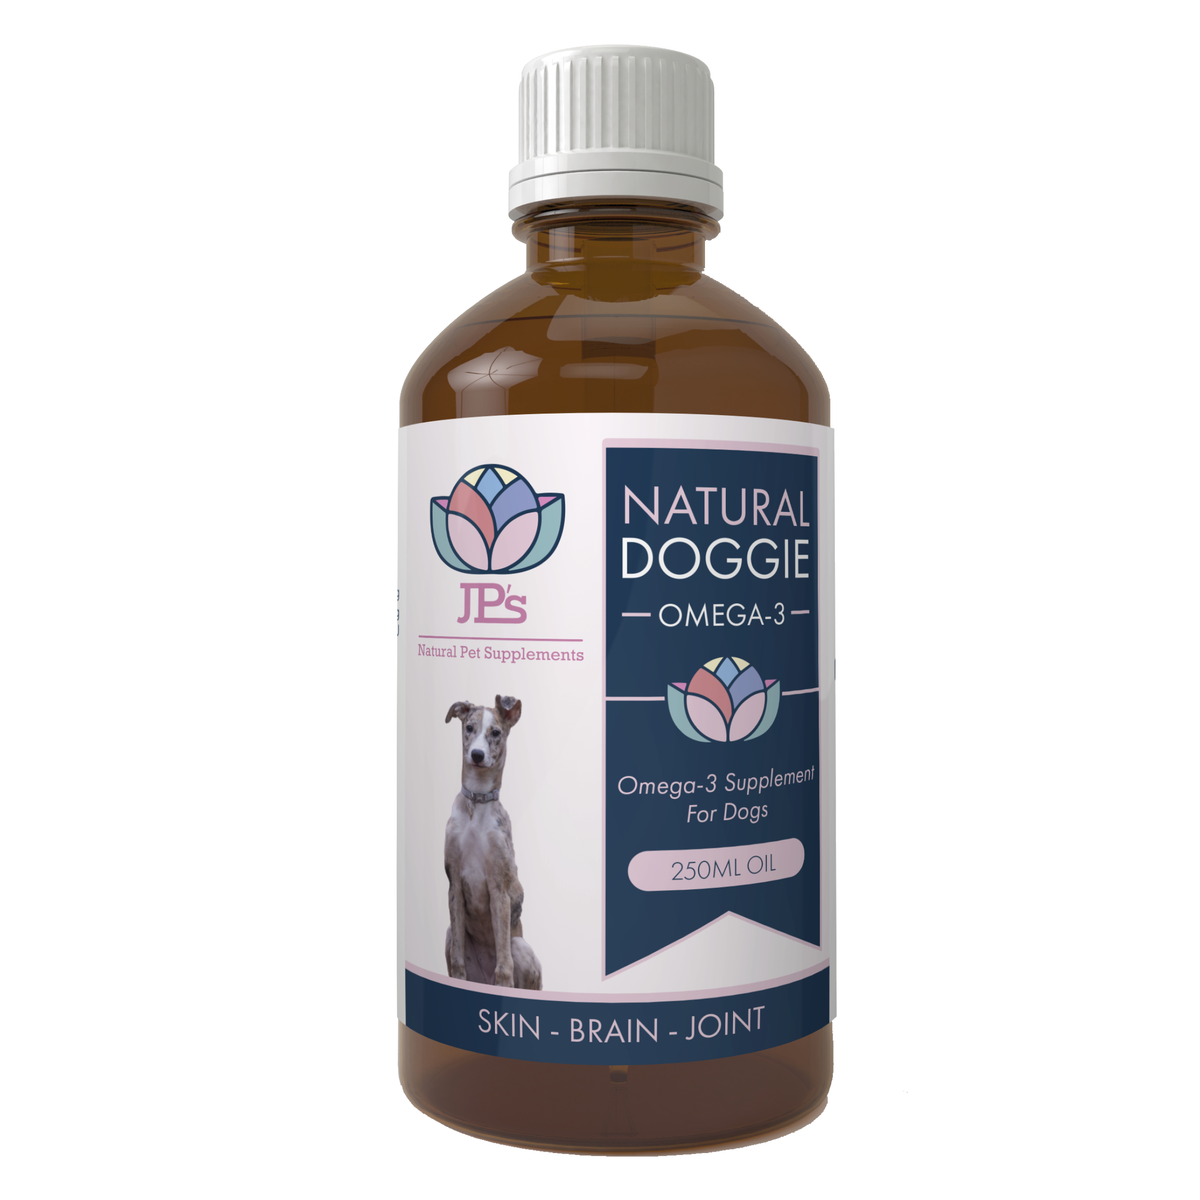 Omega-3 oil for dogs